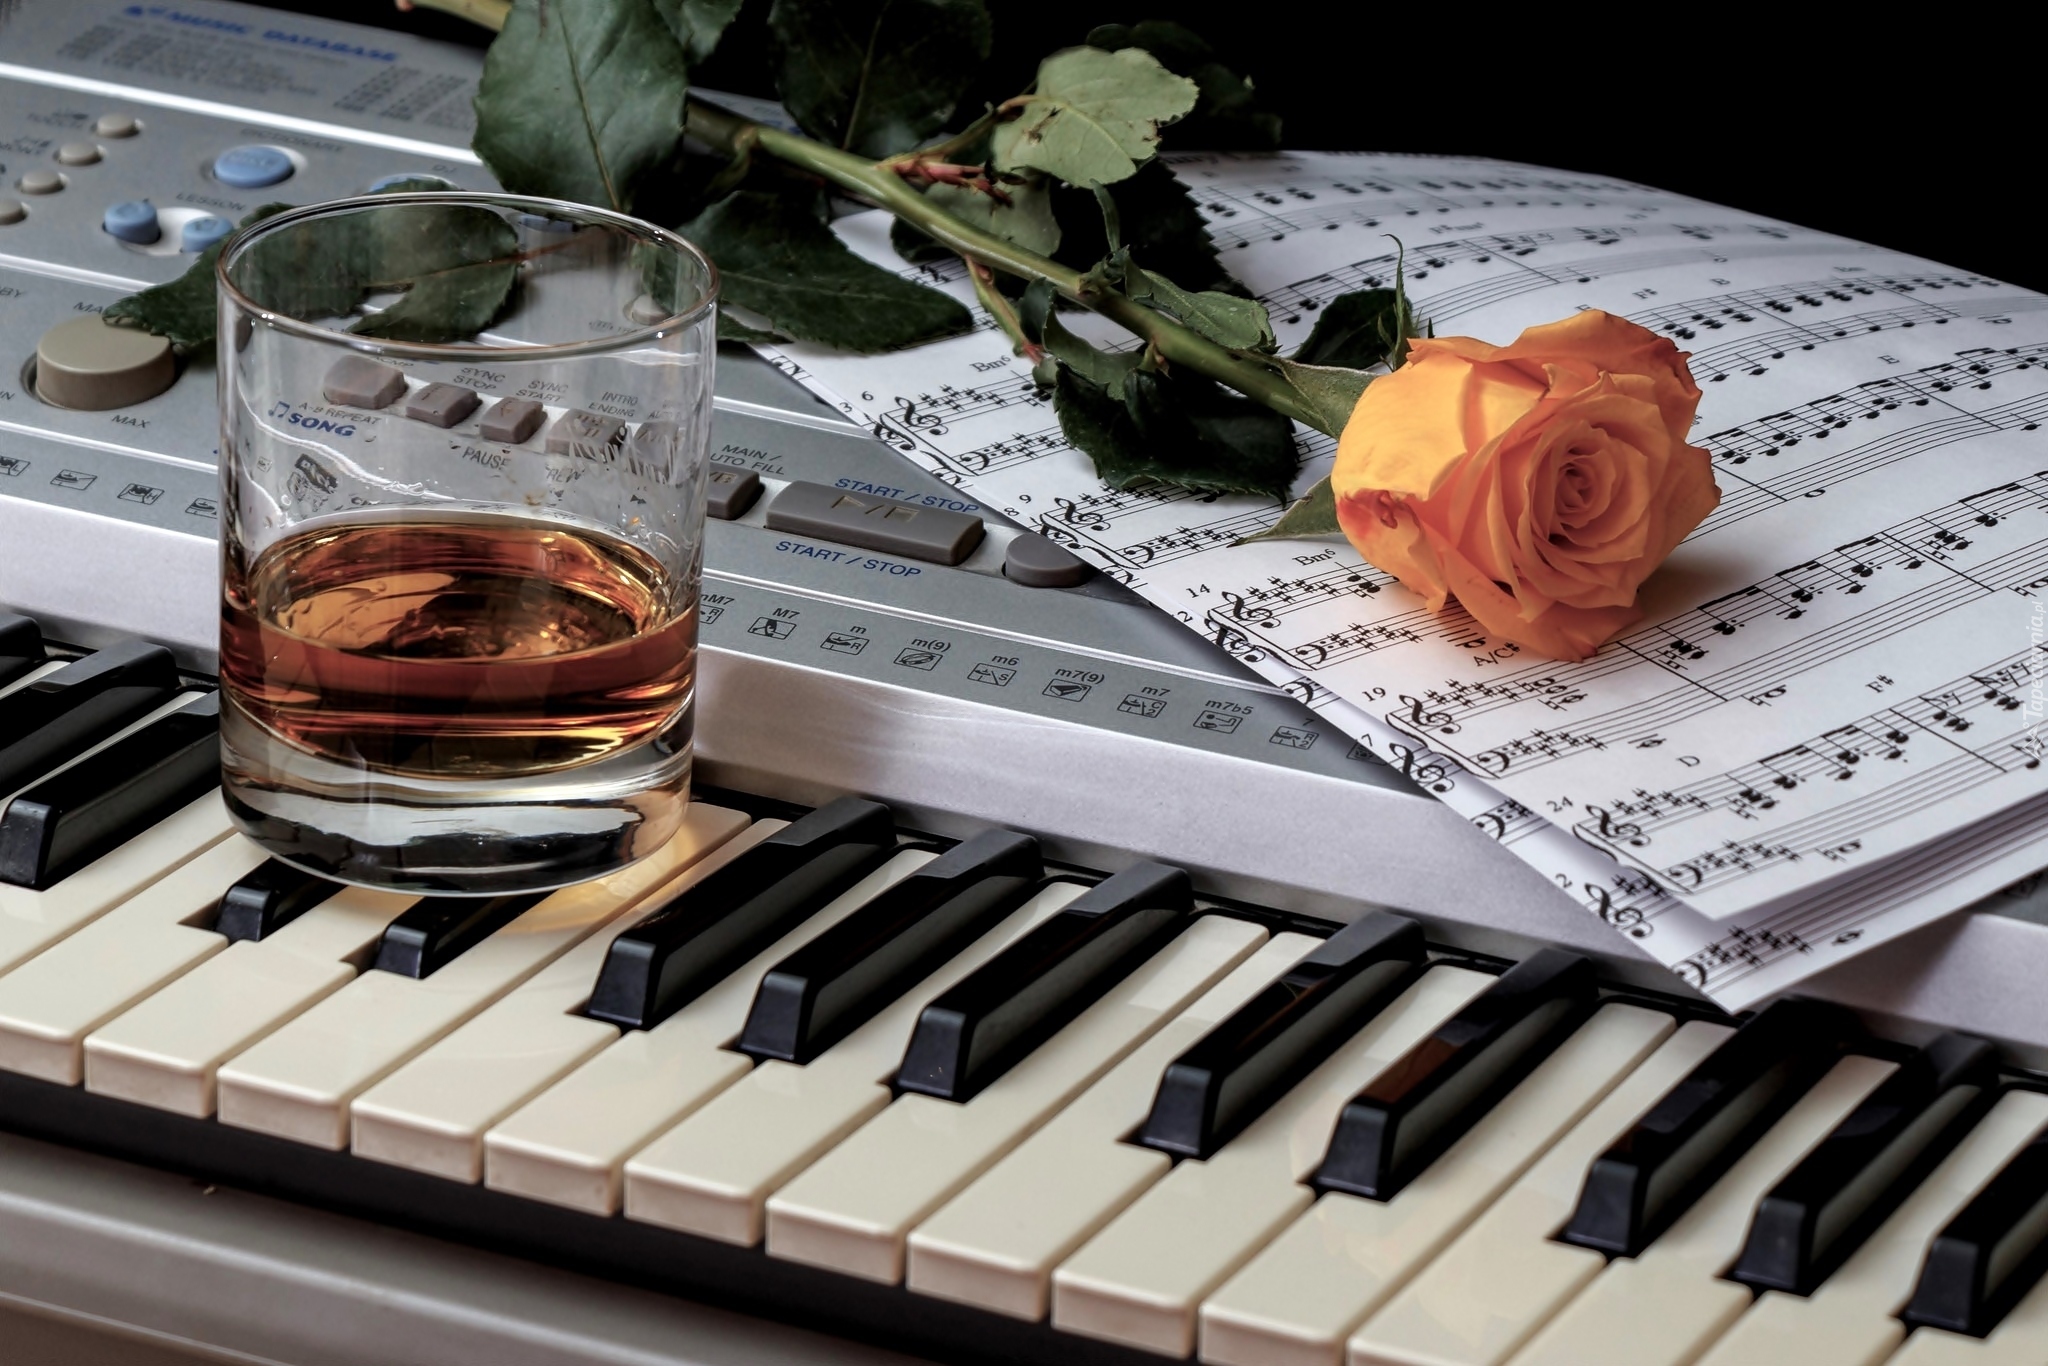 Herbaciana, Róża, Nuty, Szklanka, Instrument muzyczny, Keyboard